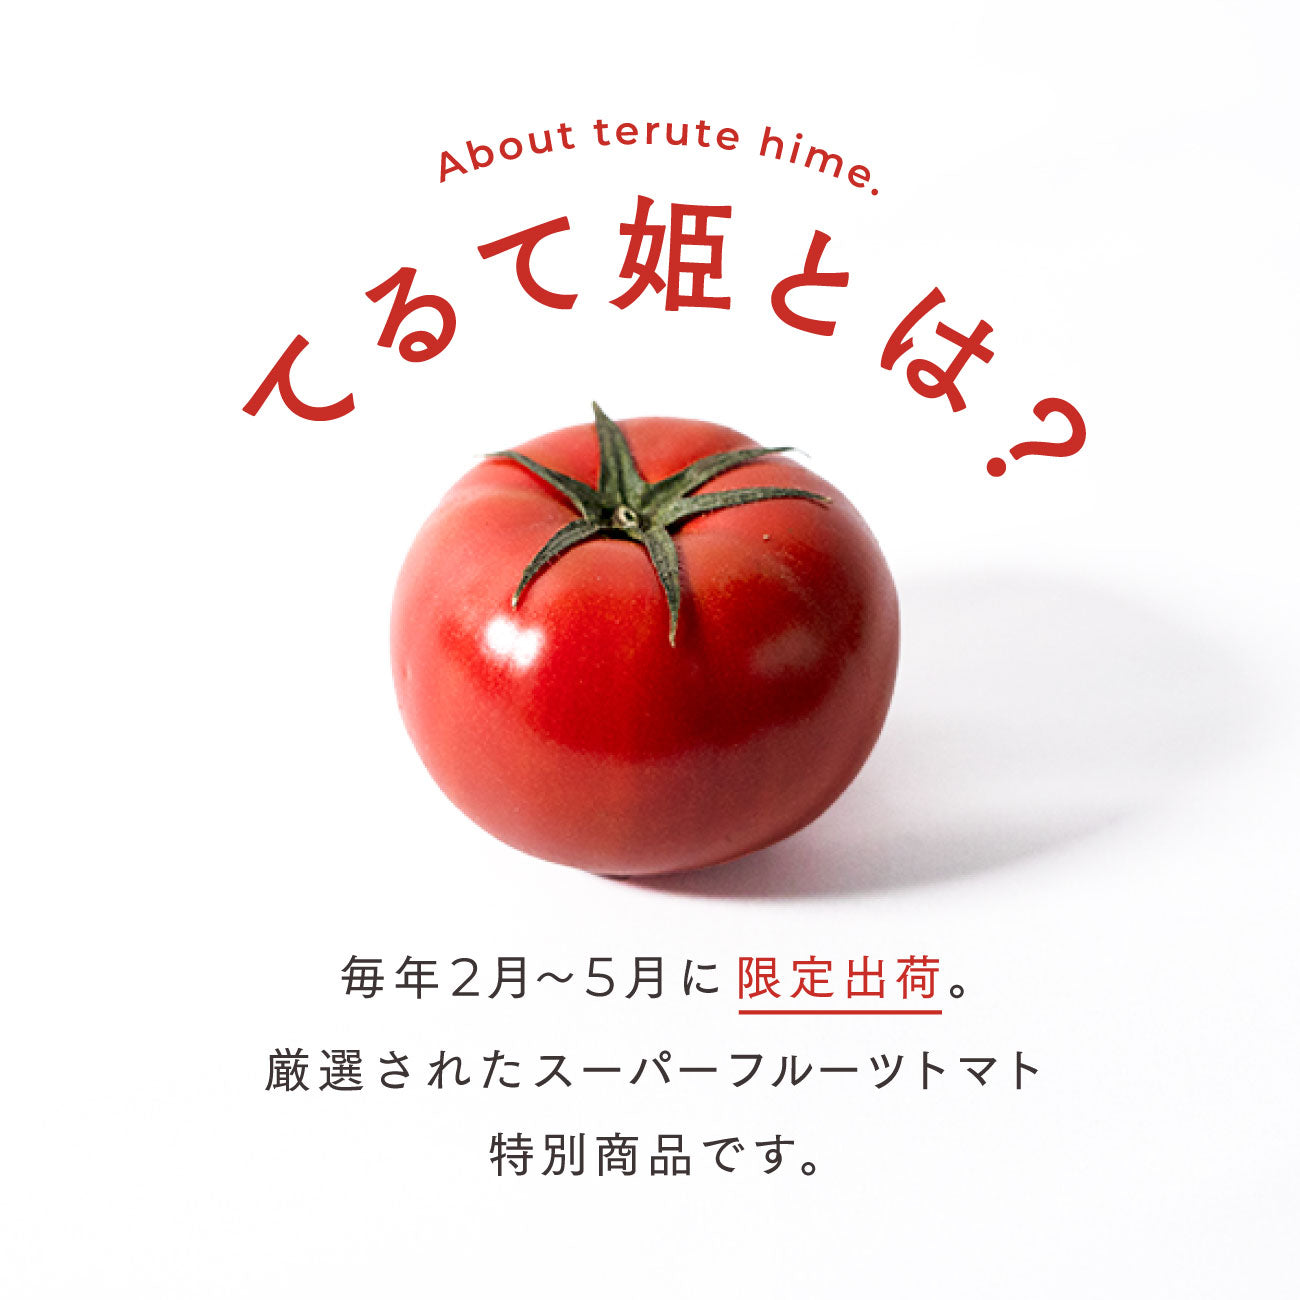 てるて姫とは？毎年2月〜5月に限定出荷。厳選されたスーパーフルーツトマト特別商品です。